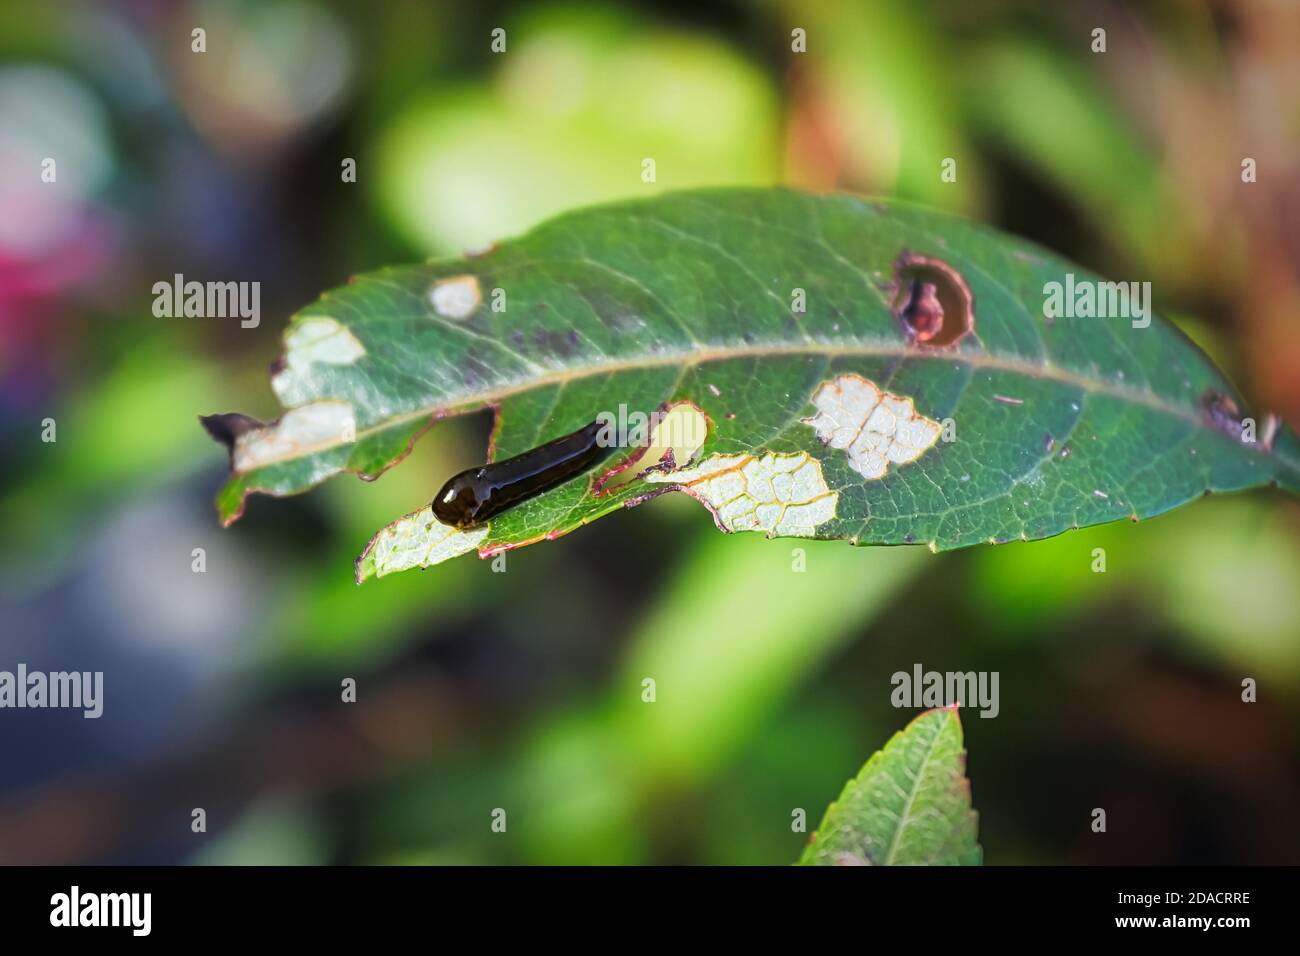 Macro of a pear slug skeletonizing foliage Stock Photo